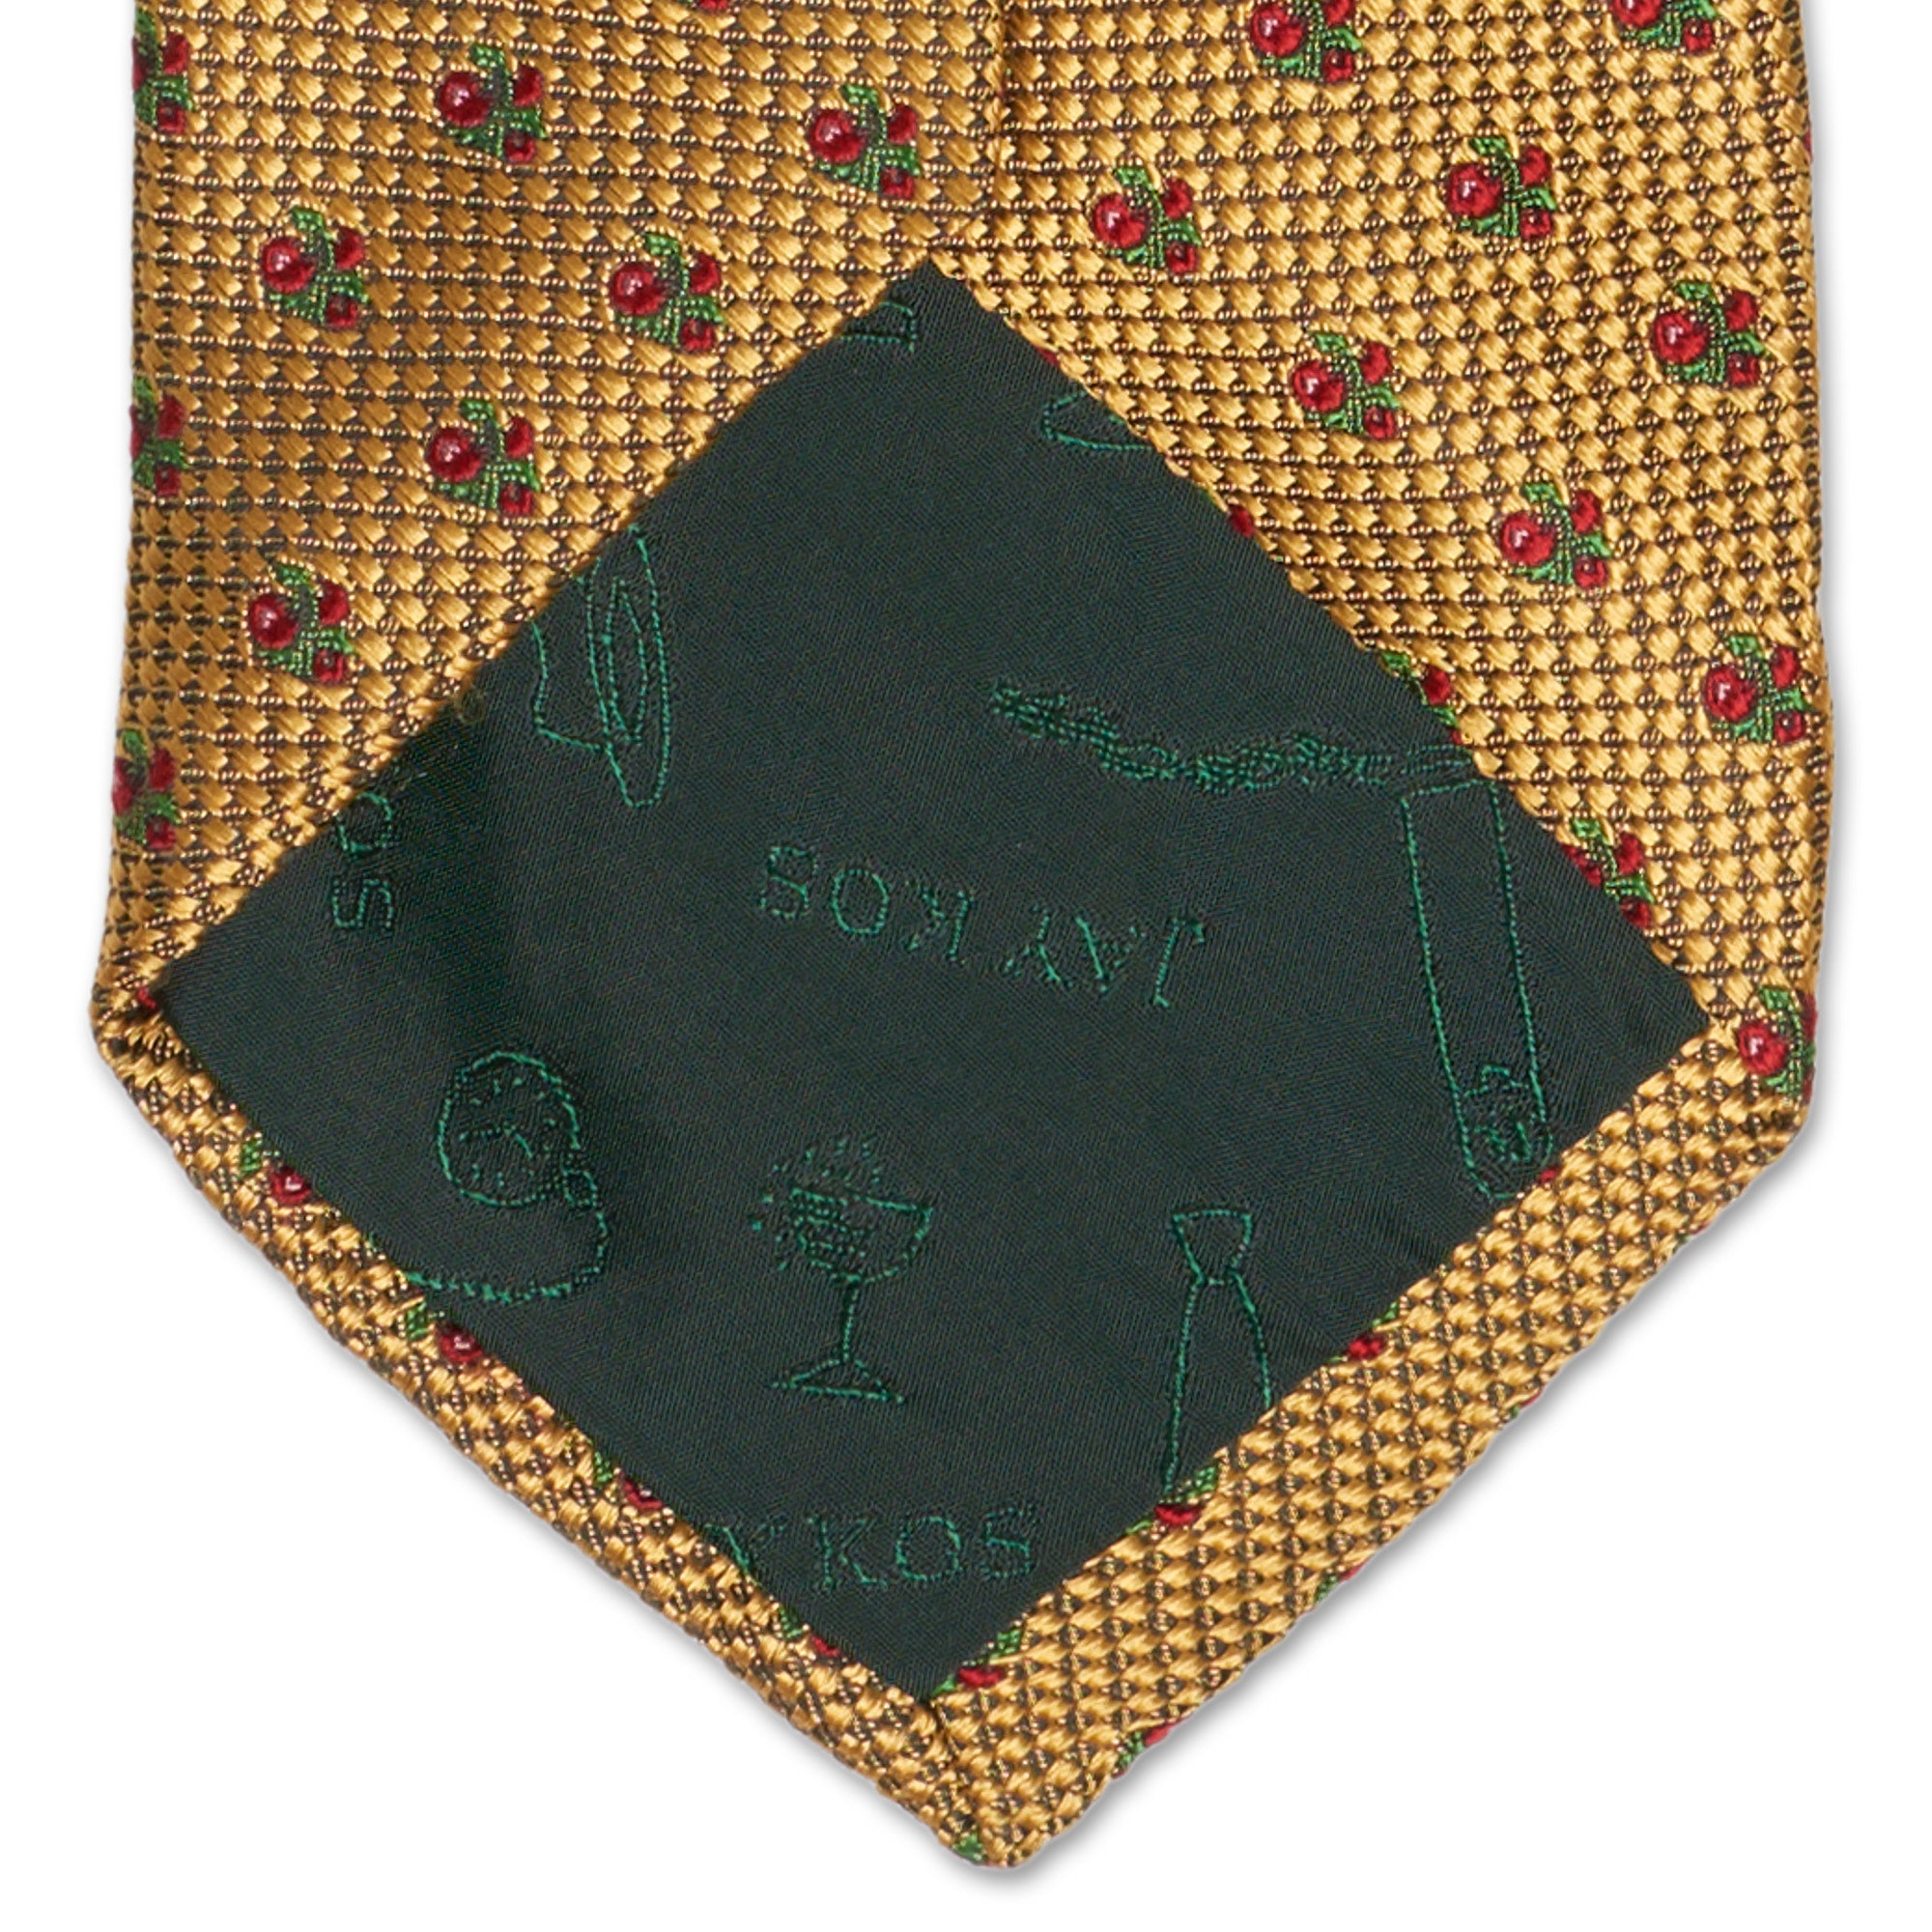 JAY KOS New York Handmade Yellow Macro-Design Silk Tie JAY KOS